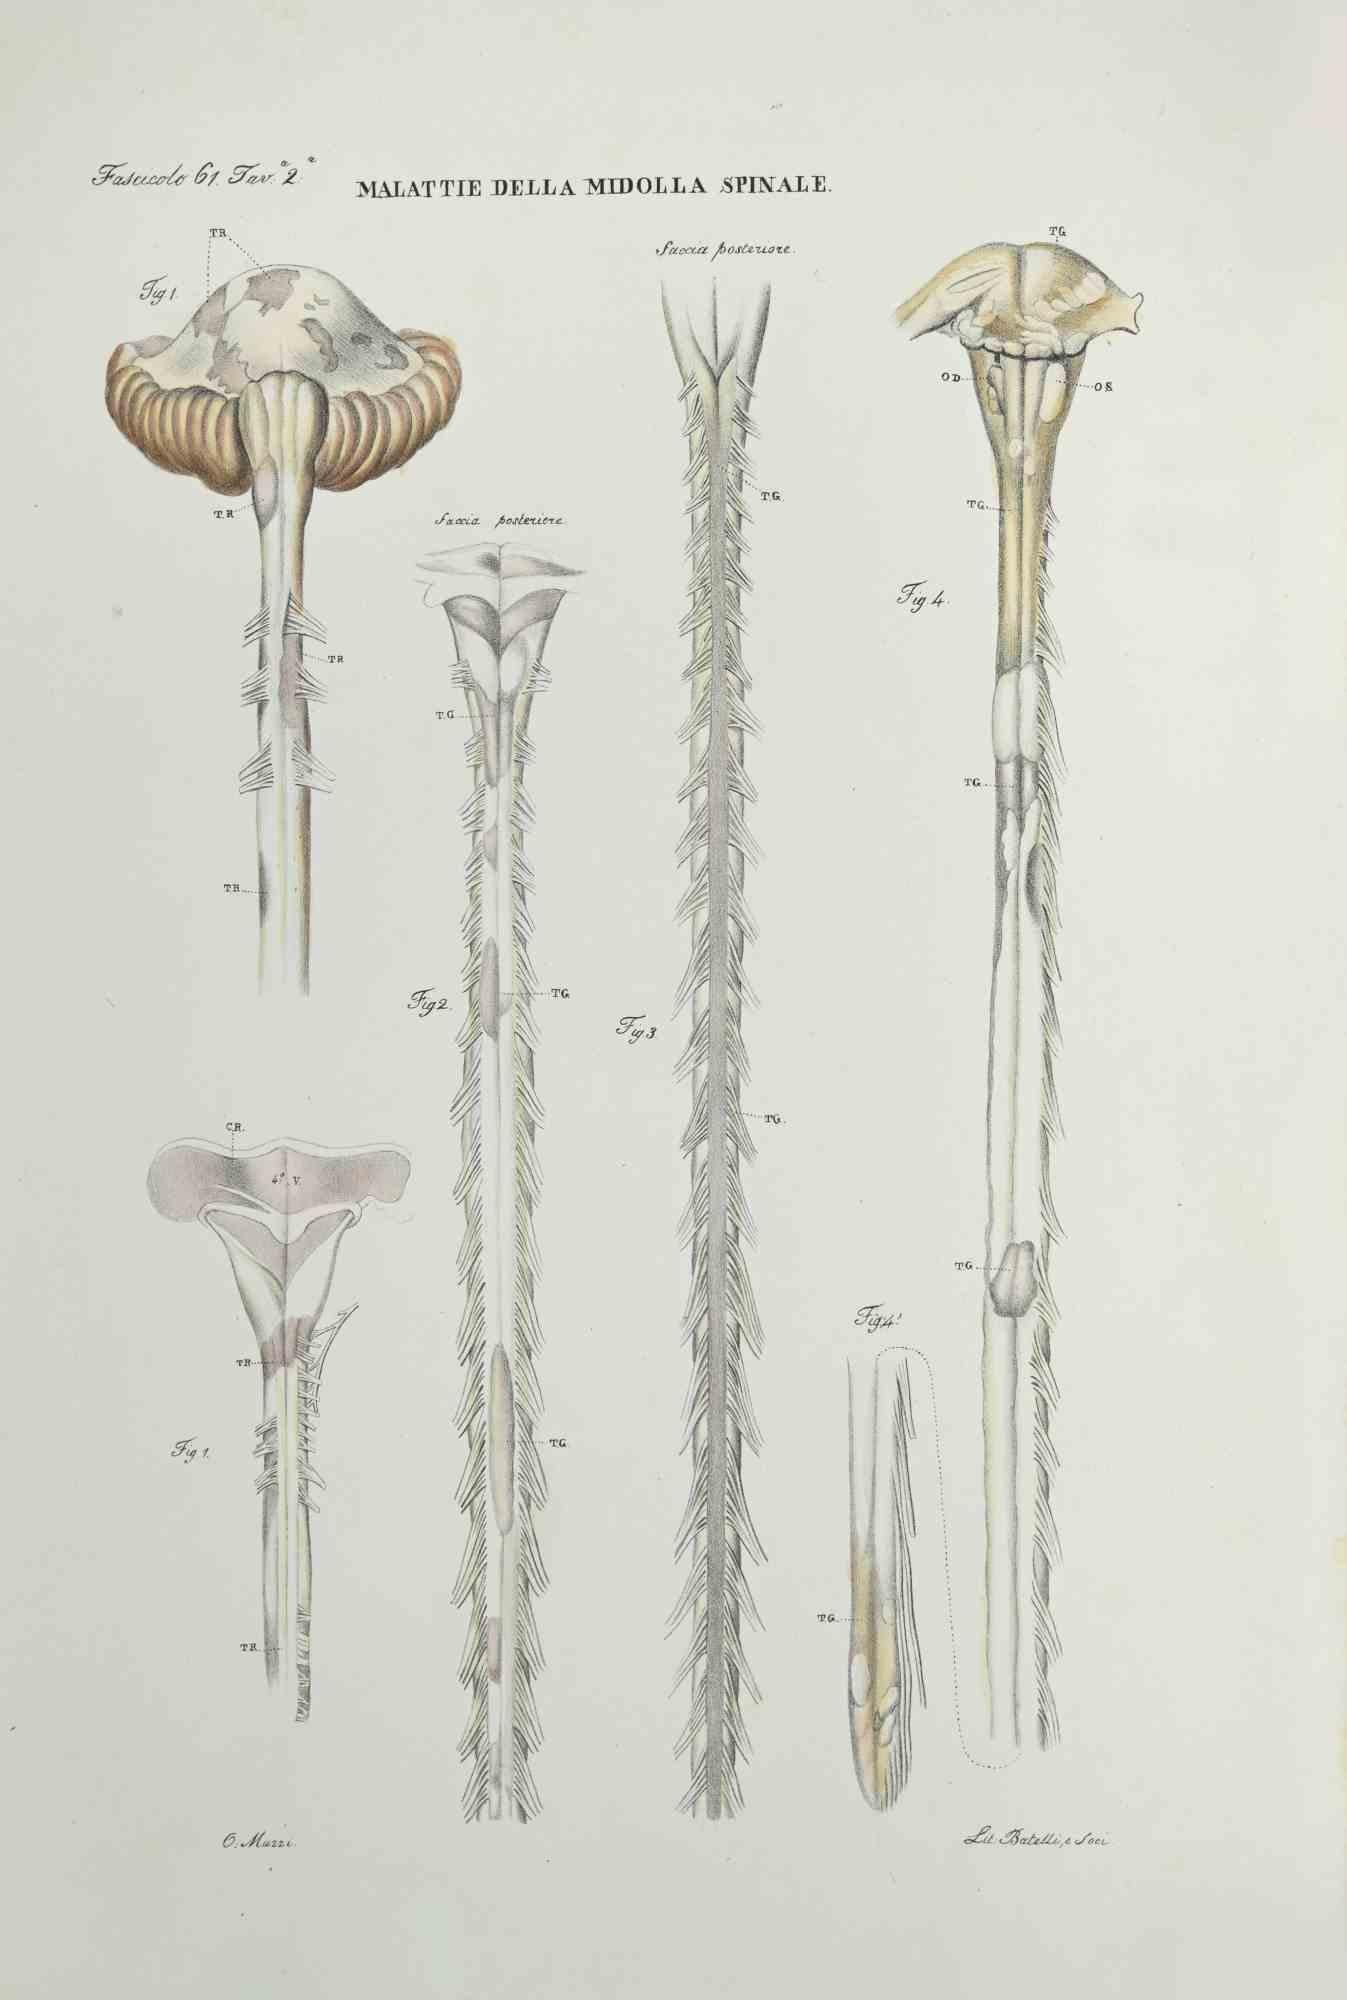 Diseases of the Spinal Cord ist eine handkolorierte Lithographie von Ottavio Muzzi für die Ausgabe von Antoine Chazal, Human Anatomy, Druckerei Batelli und Ridolfi, aus dem Jahr 1843.

Signiert auf der Platte am unteren linken Rand.

Das Kunstwerk